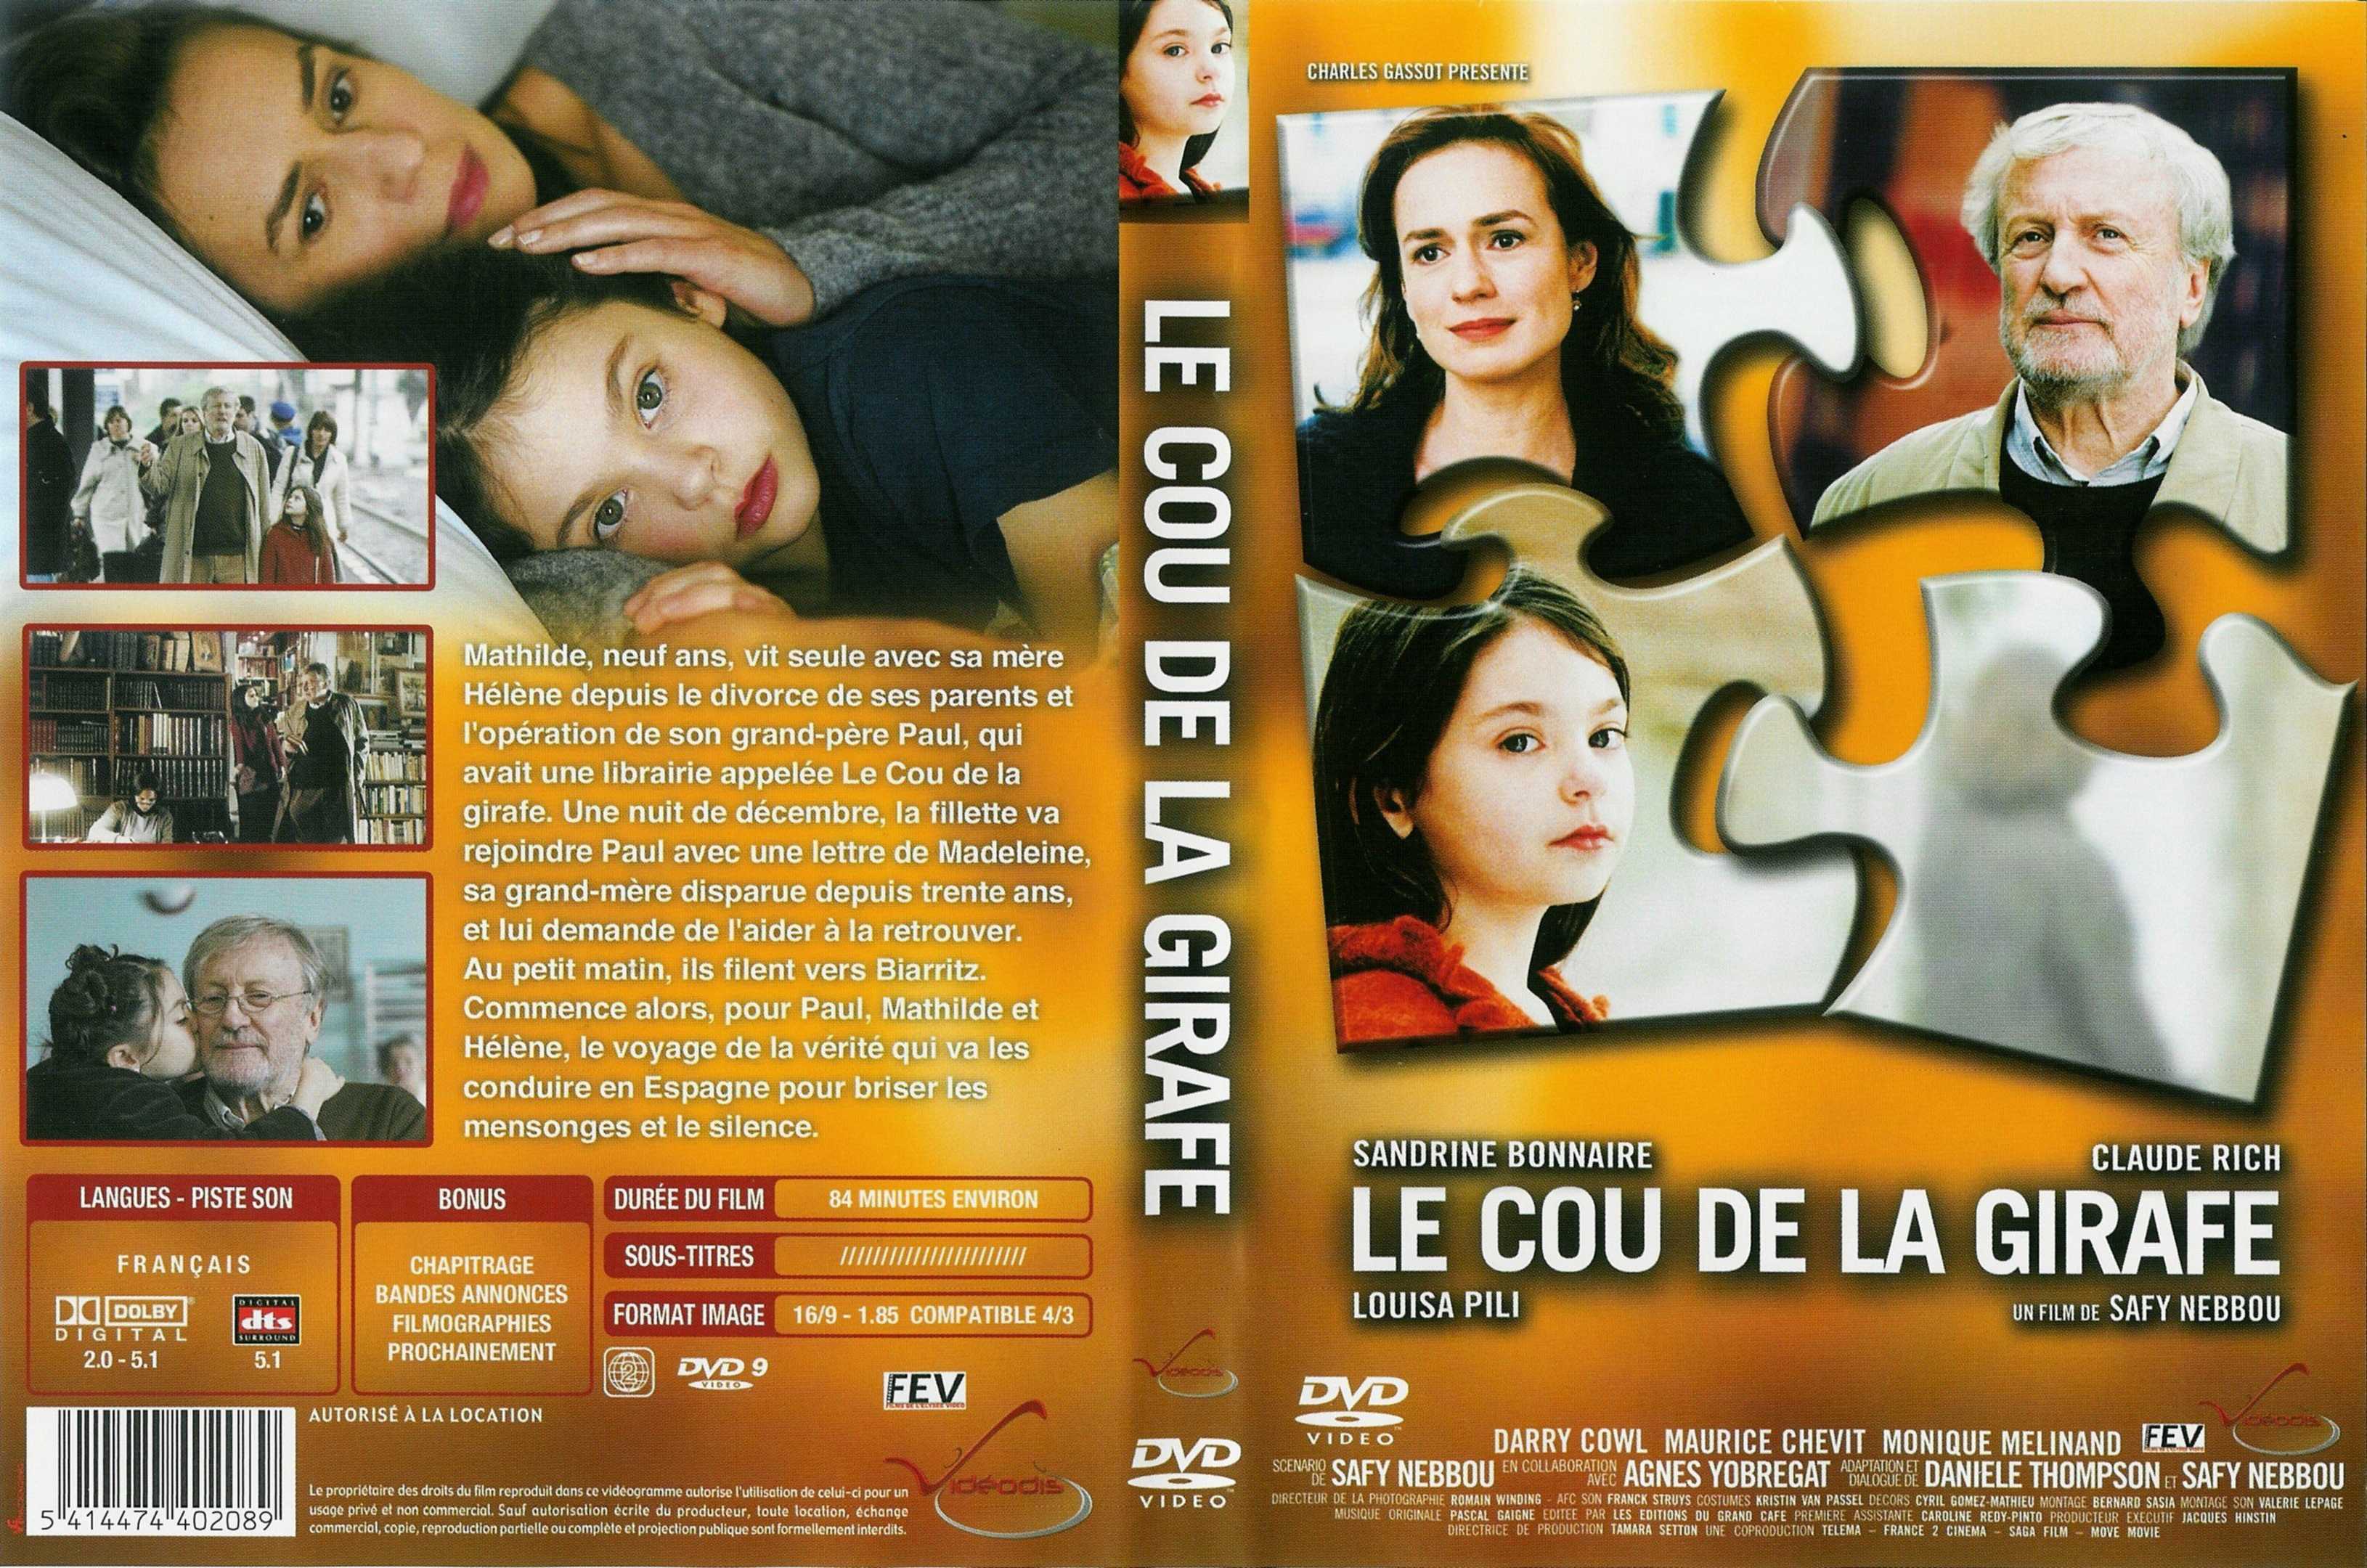 Jaquette DVD Le cou de la girafe v2